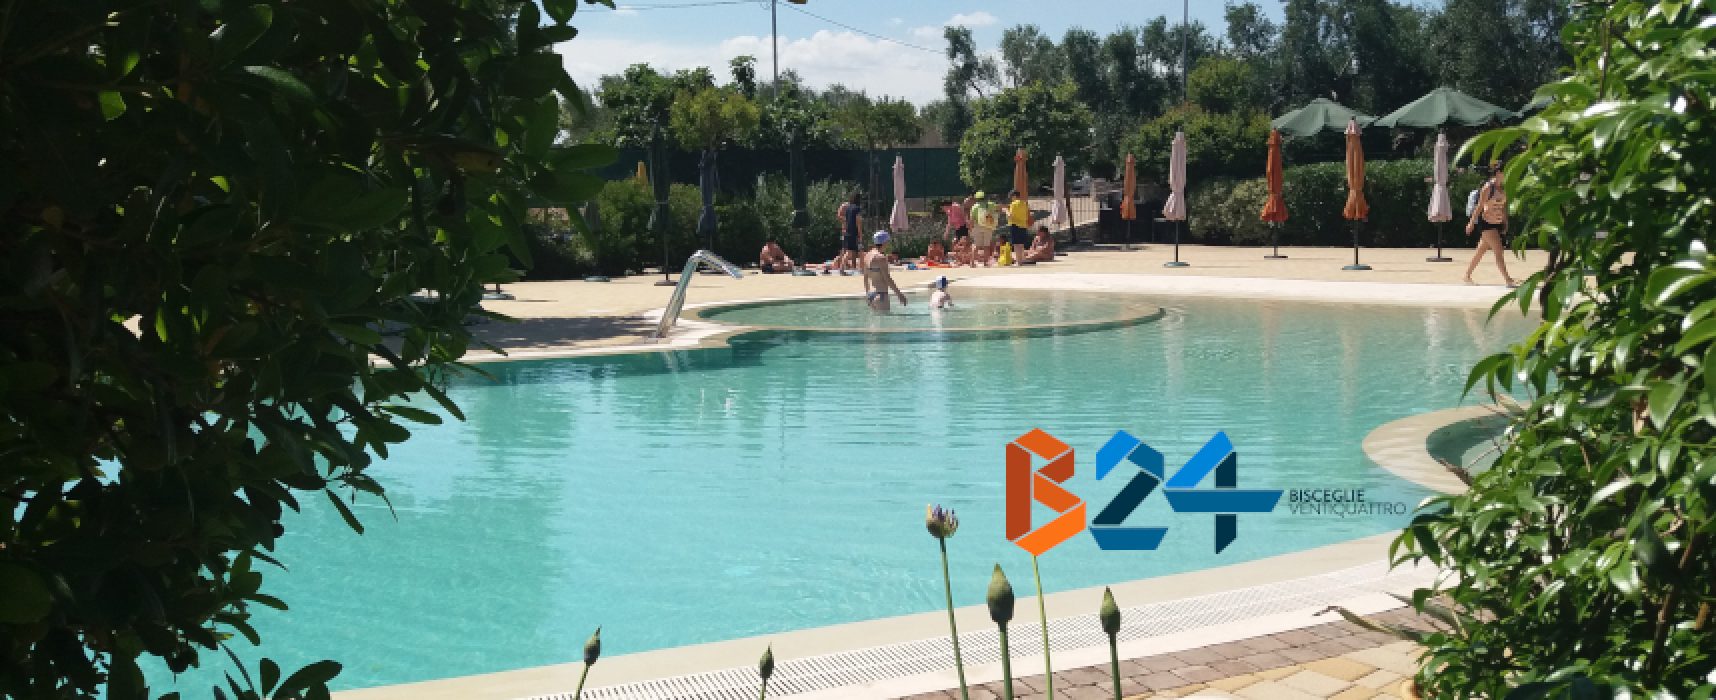 “Brezza tra gli ulivi”, tutte le attività estive dal campus per i piccoli alle giornate in piscina